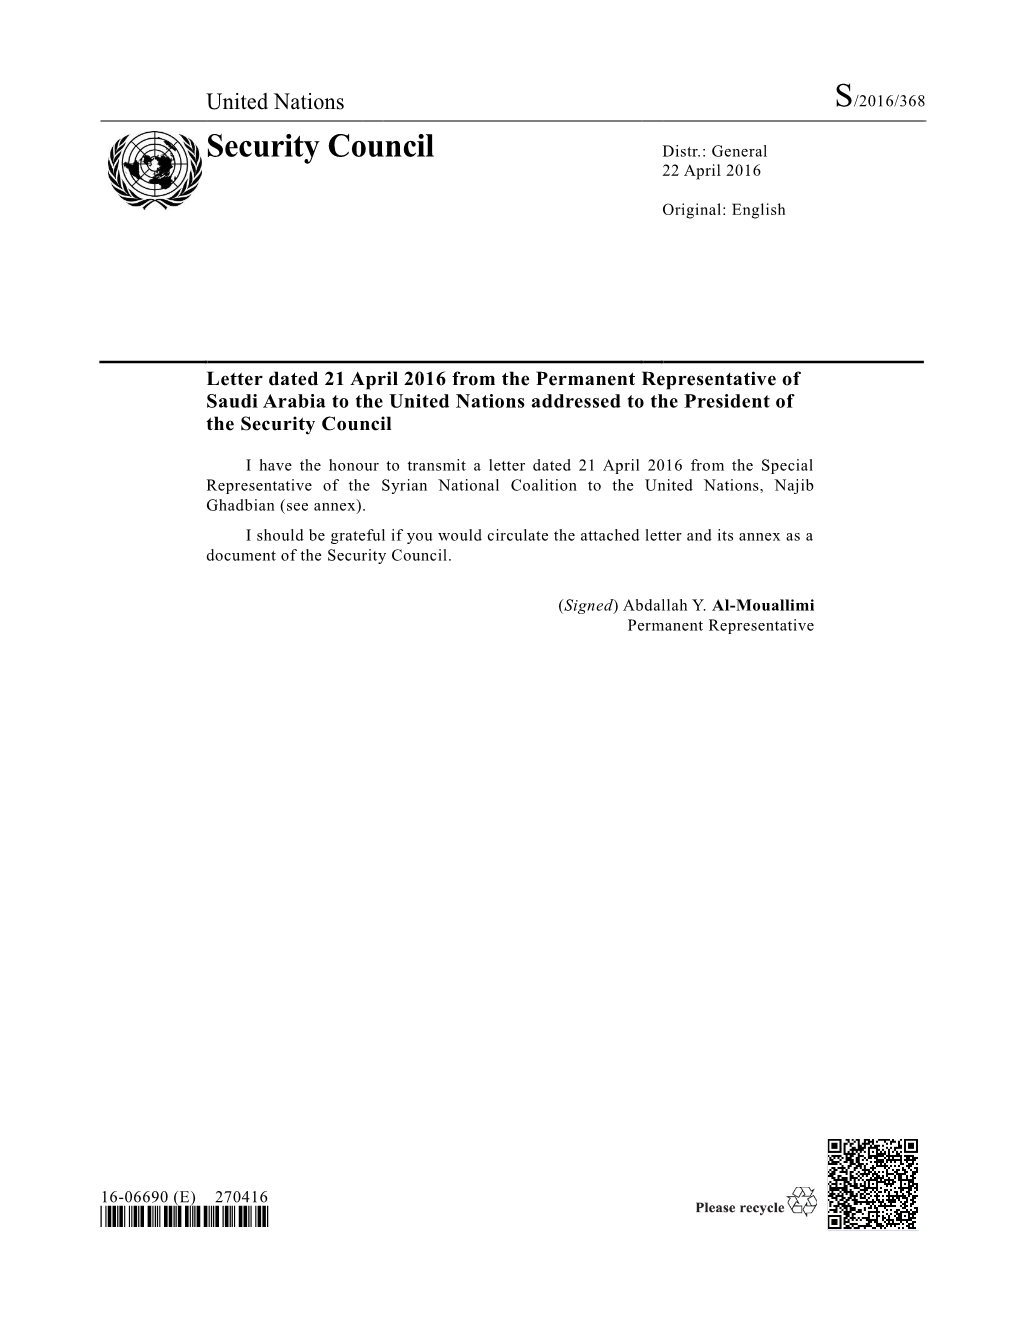 Security Council Distr.: General 22 April 2016